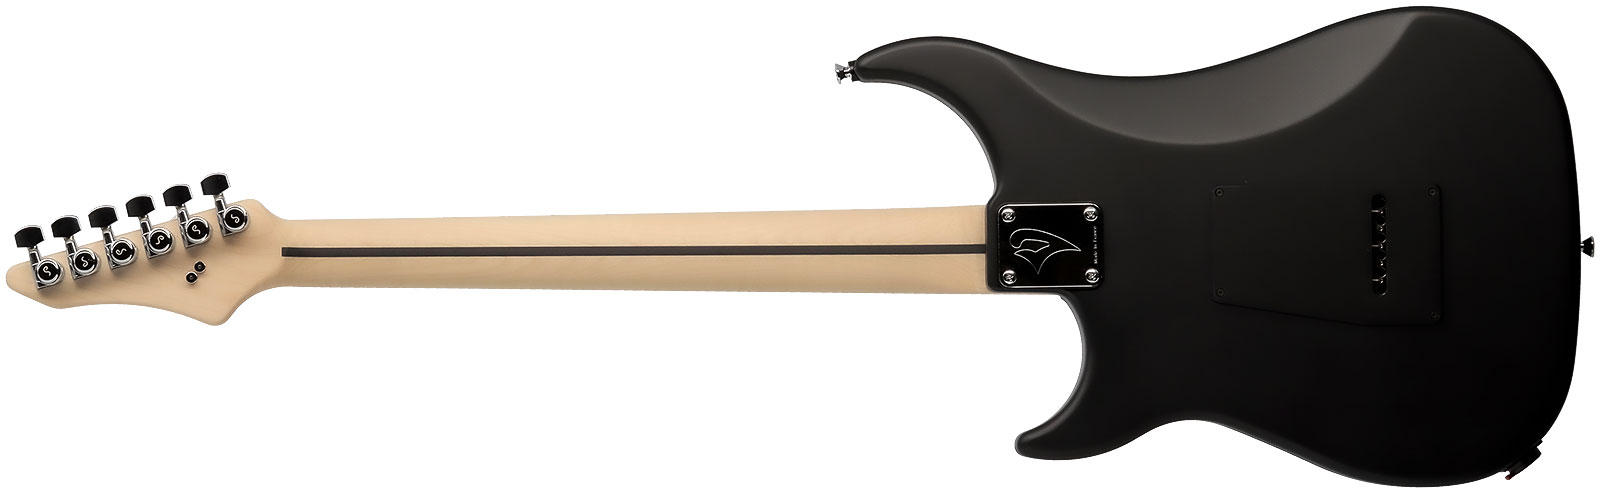 Vigier Excalibur Indus 2h Trem Rw - Black Matte - Double Cut E-Gitarre - Variation 1